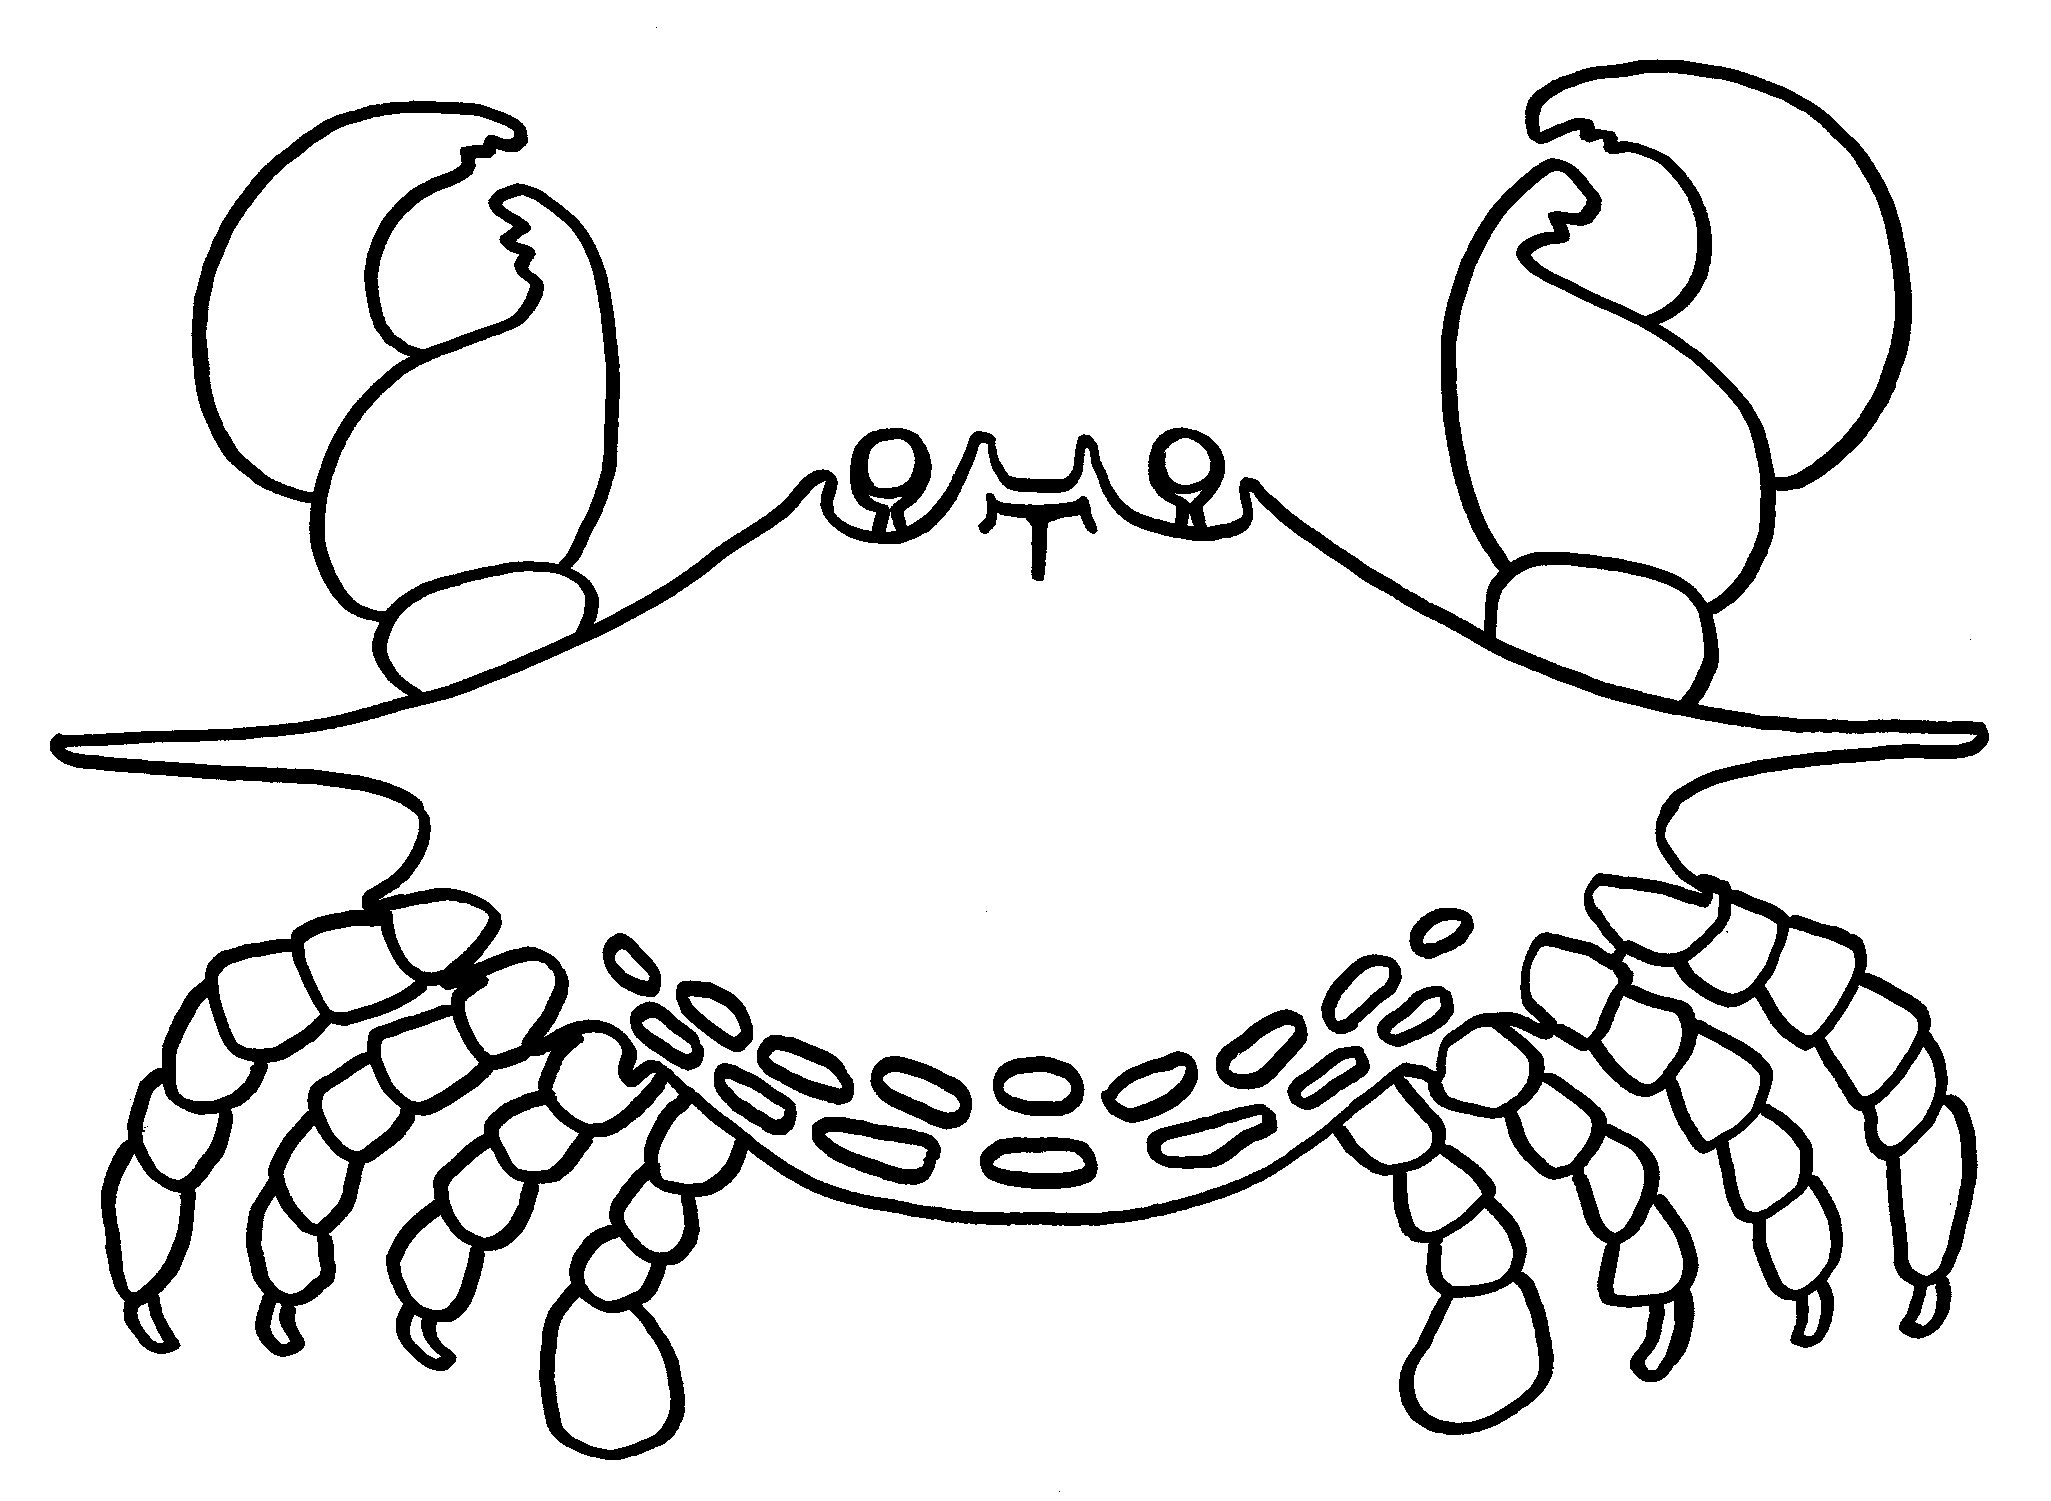 Coloriage Crabe #4588 (Animaux) - Album De Coloriages dedans Photo De Crabe A Imprimer 